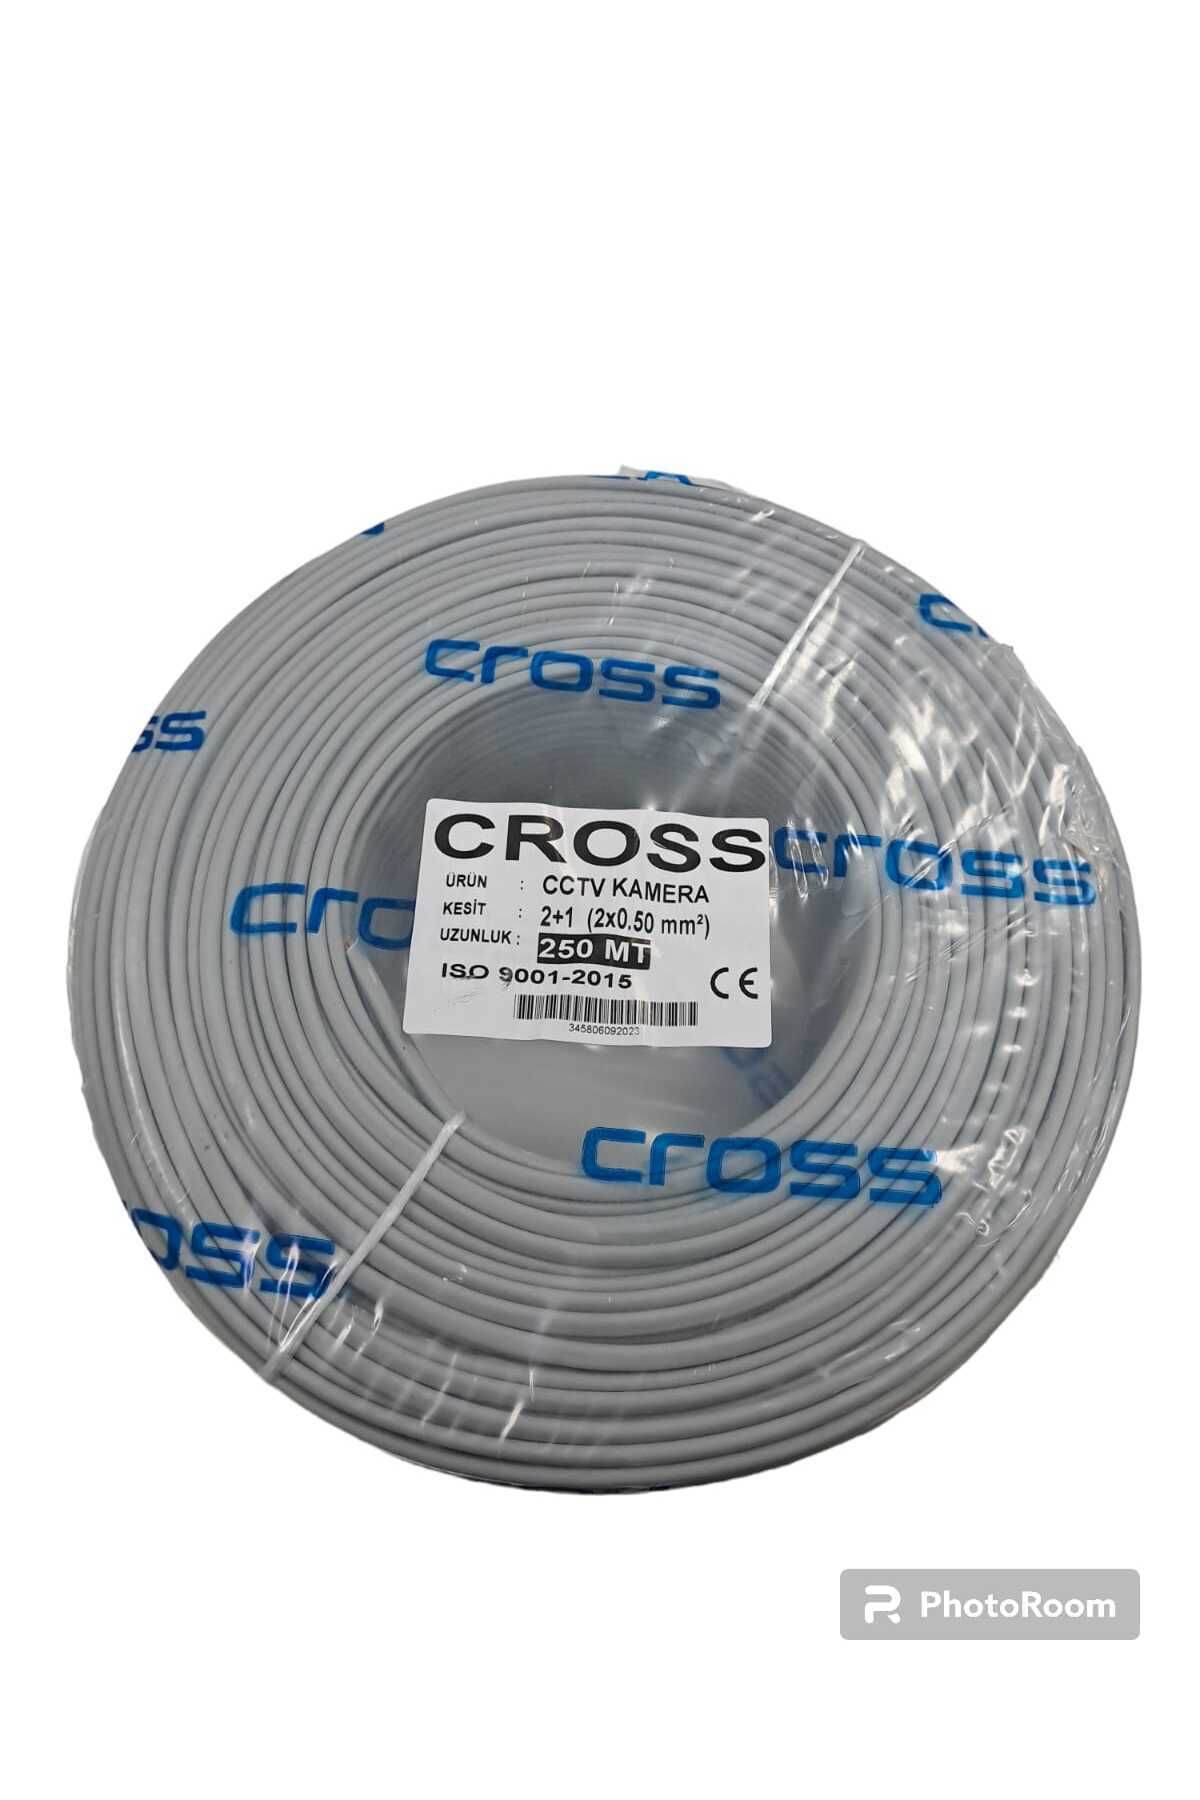 Cross Armağan 2 1 2x0.50mm Folyolu Lüks Cctv Kablo - 250m Cctv Kamera Kablosu